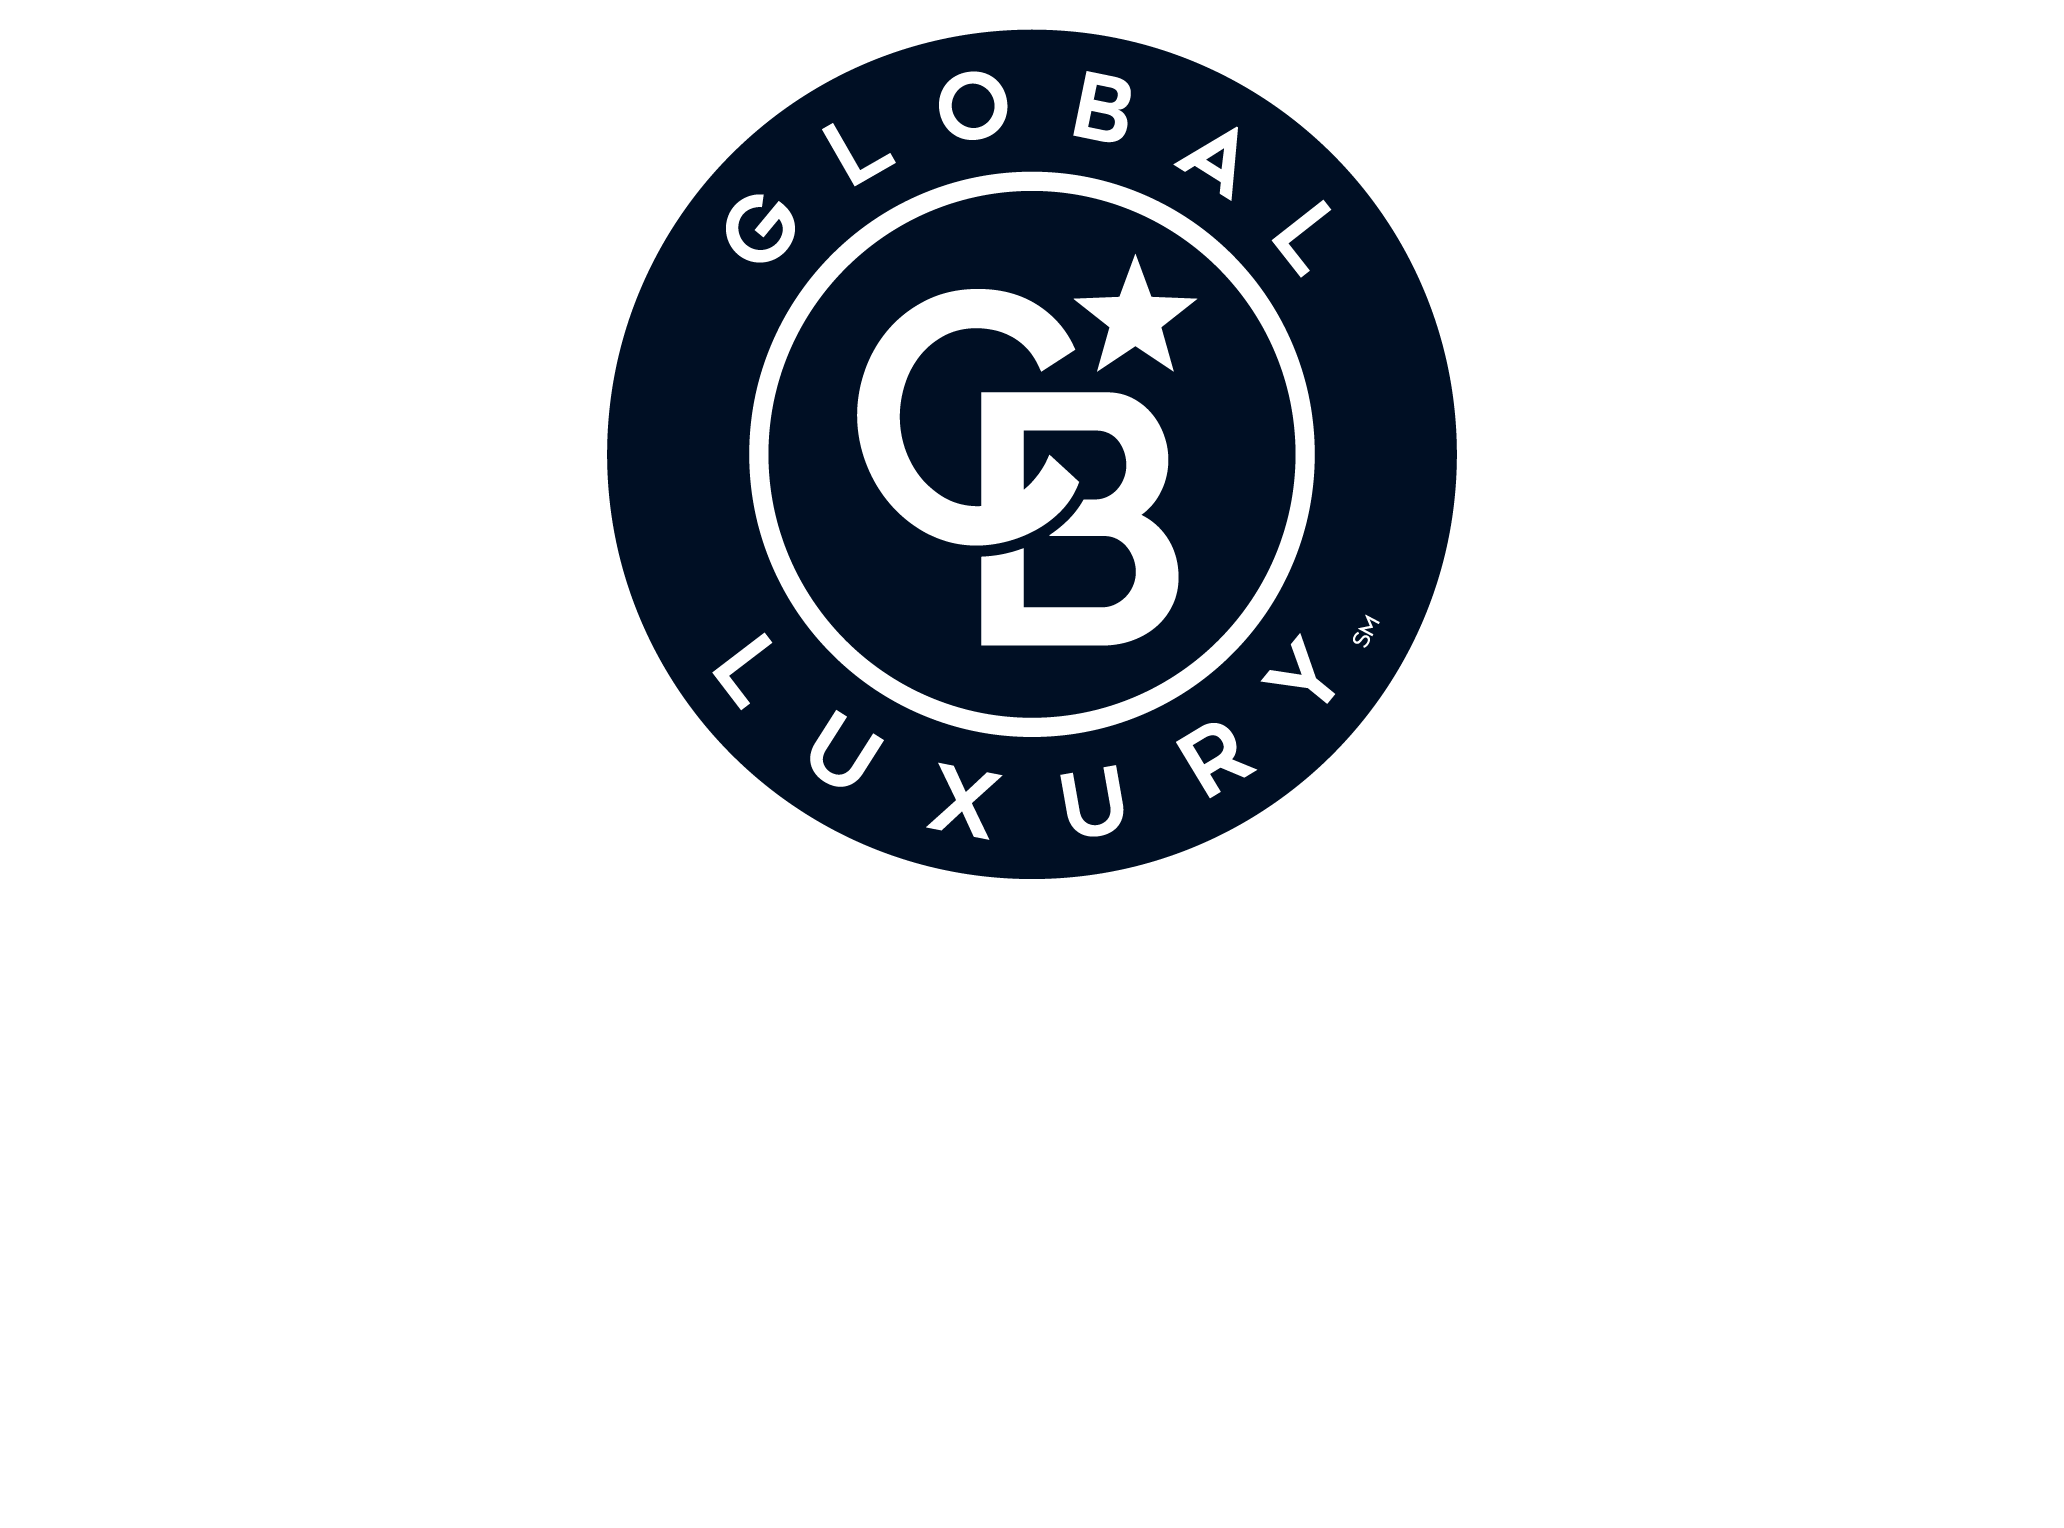 Mulleady Inc., Realtors